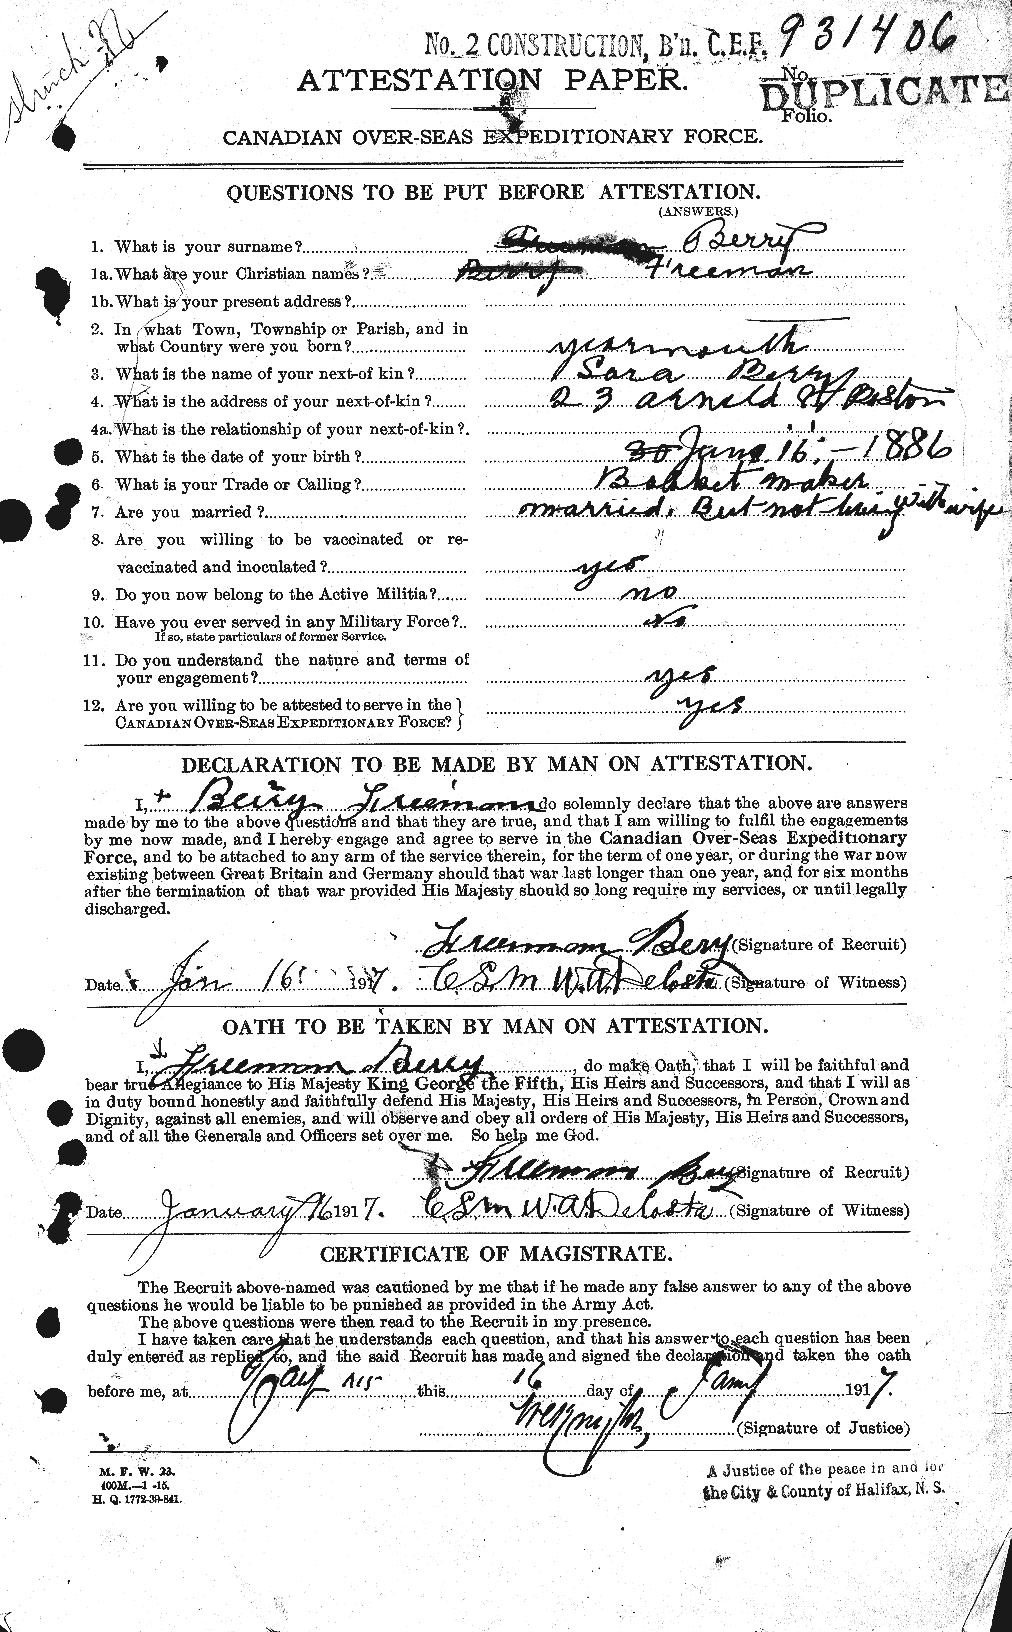 Dossiers du Personnel de la Première Guerre mondiale - CEC 240803a